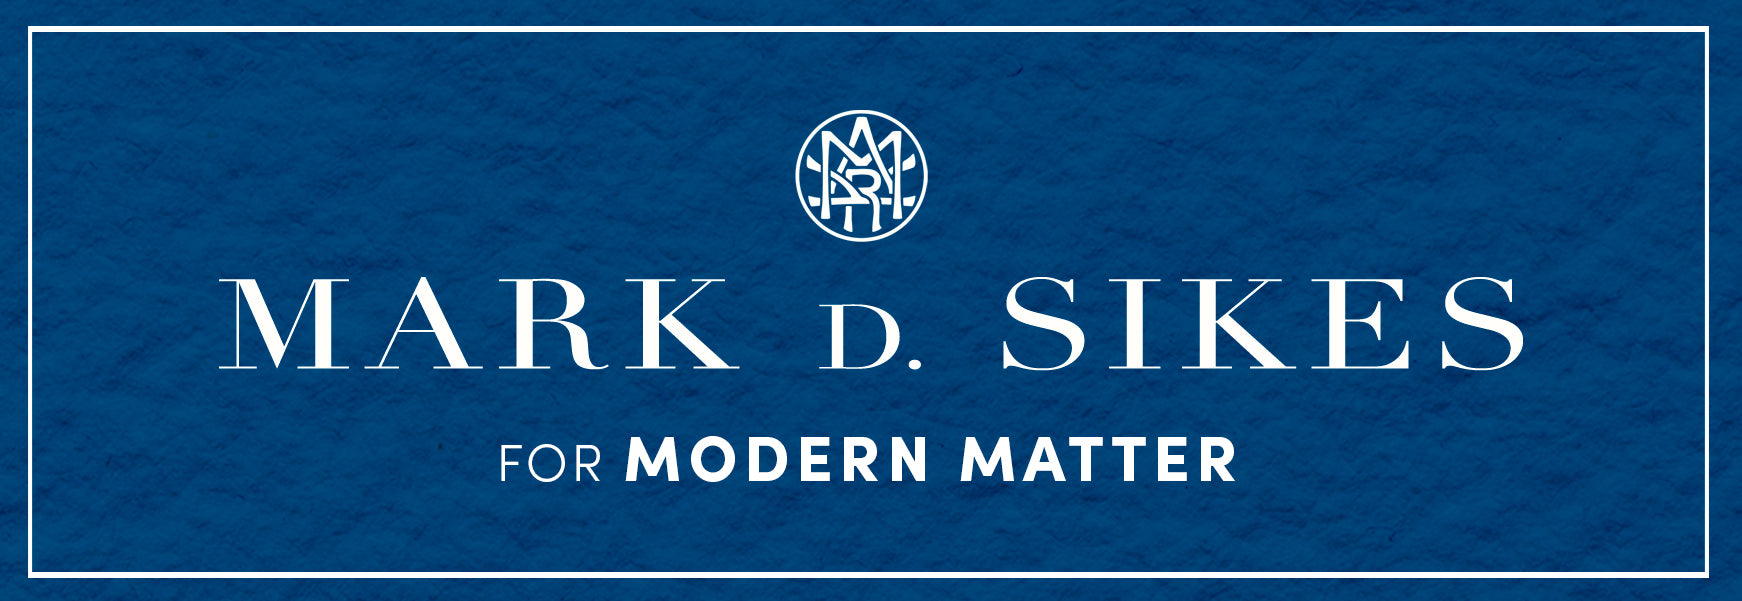 Mark D. Sikes for Modern Matter